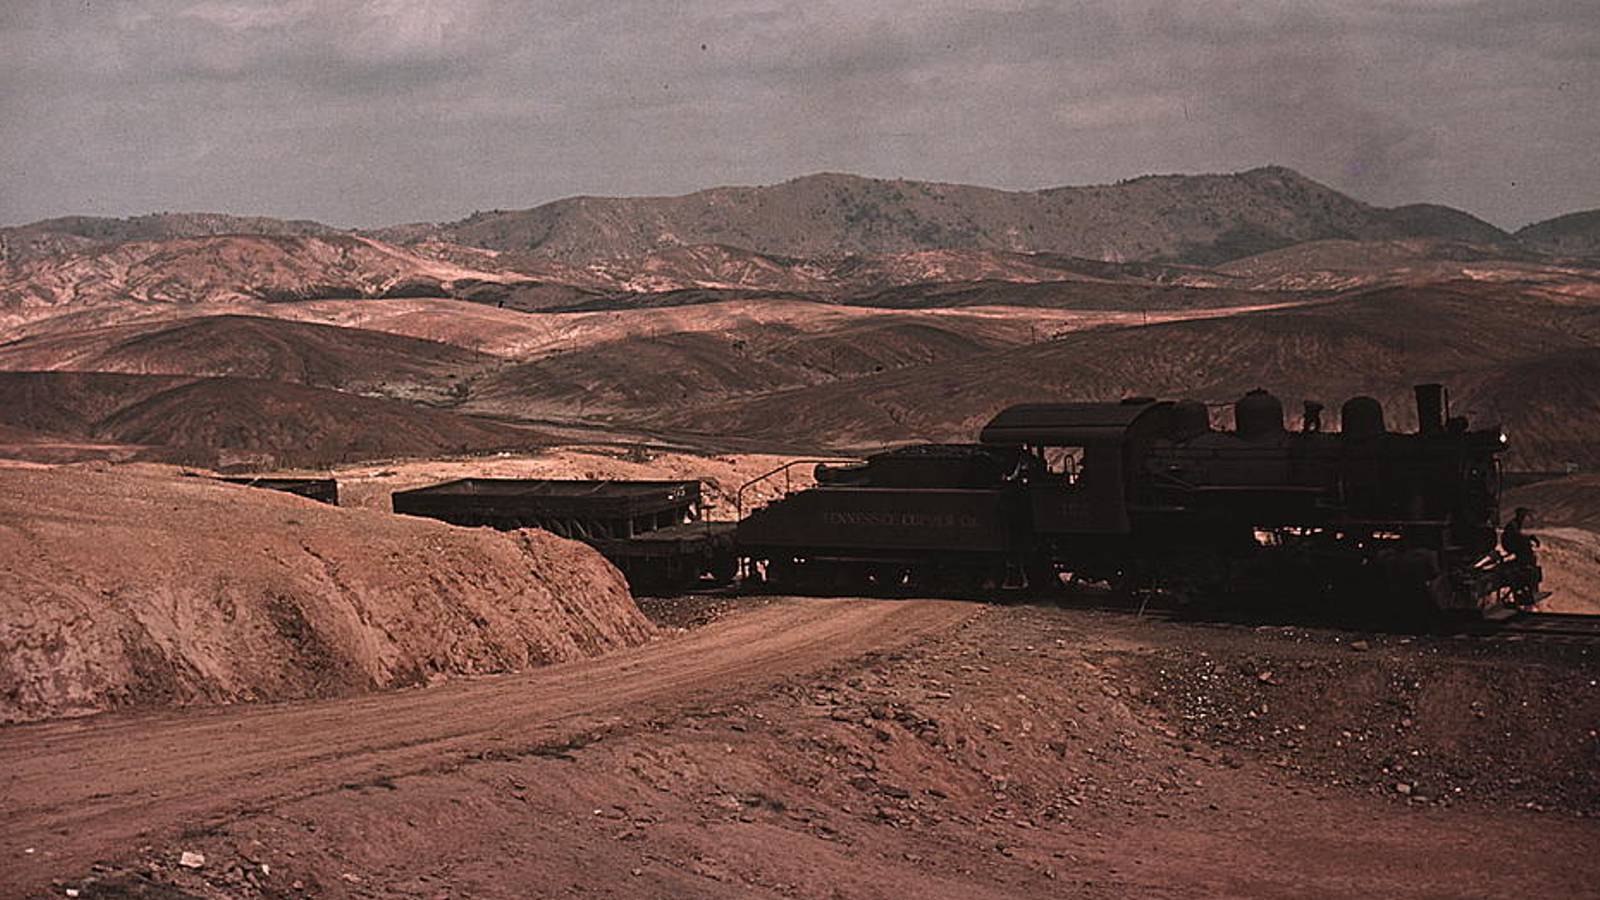 Влак, изнасящ медна руда от мините.